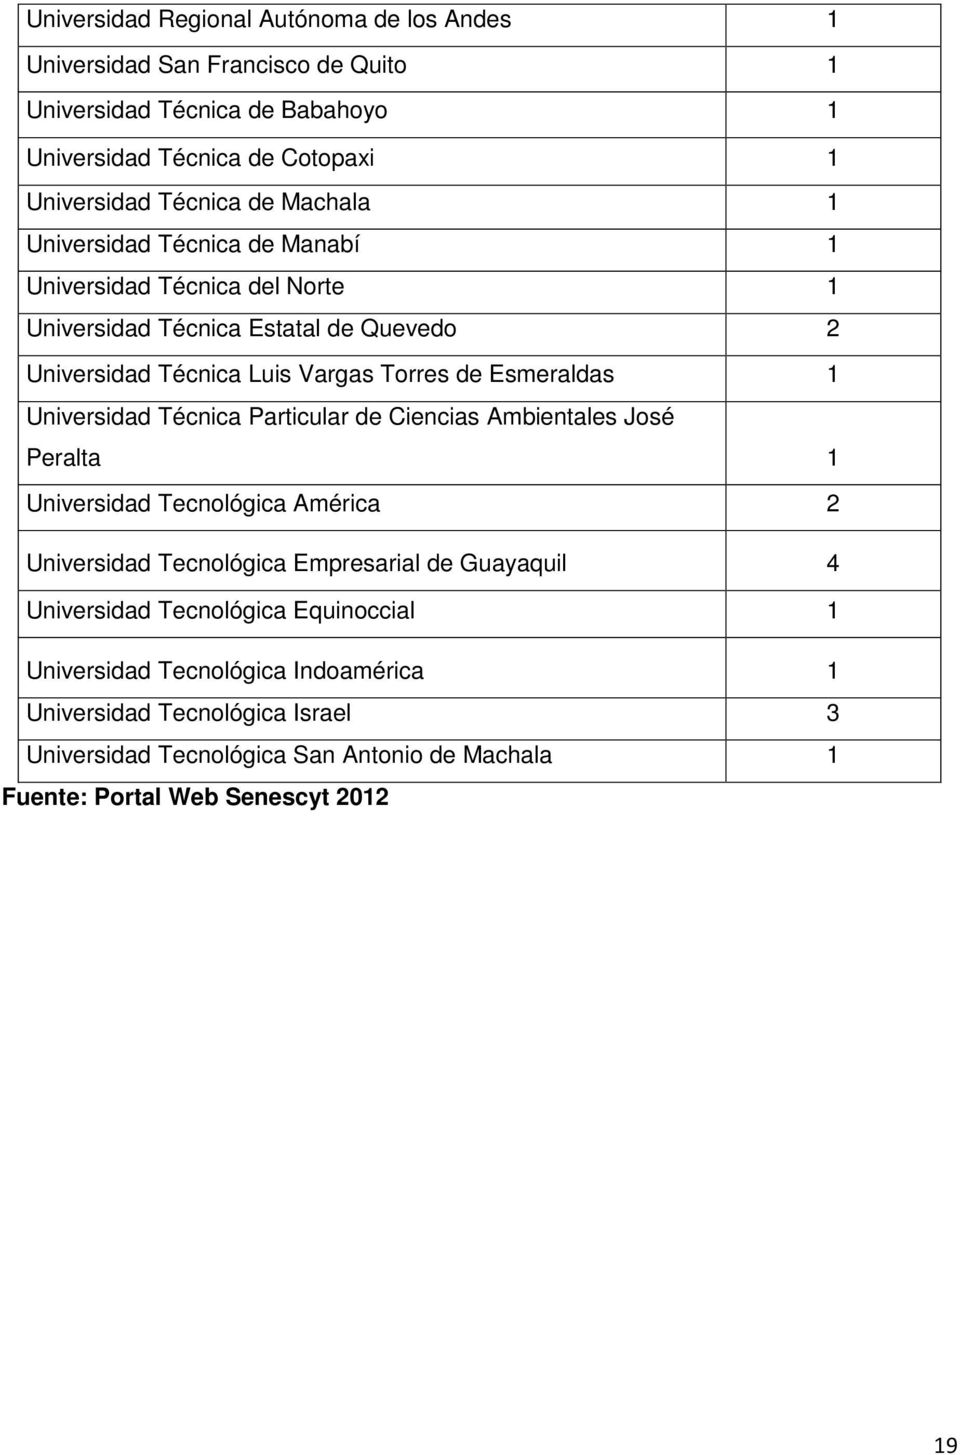 Universidad Técnica Particular de Ciencias Ambientales José Peralta 1 Universidad Tecnológica América 2 Universidad Tecnológica Empresarial de Guayaquil 4 Universidad